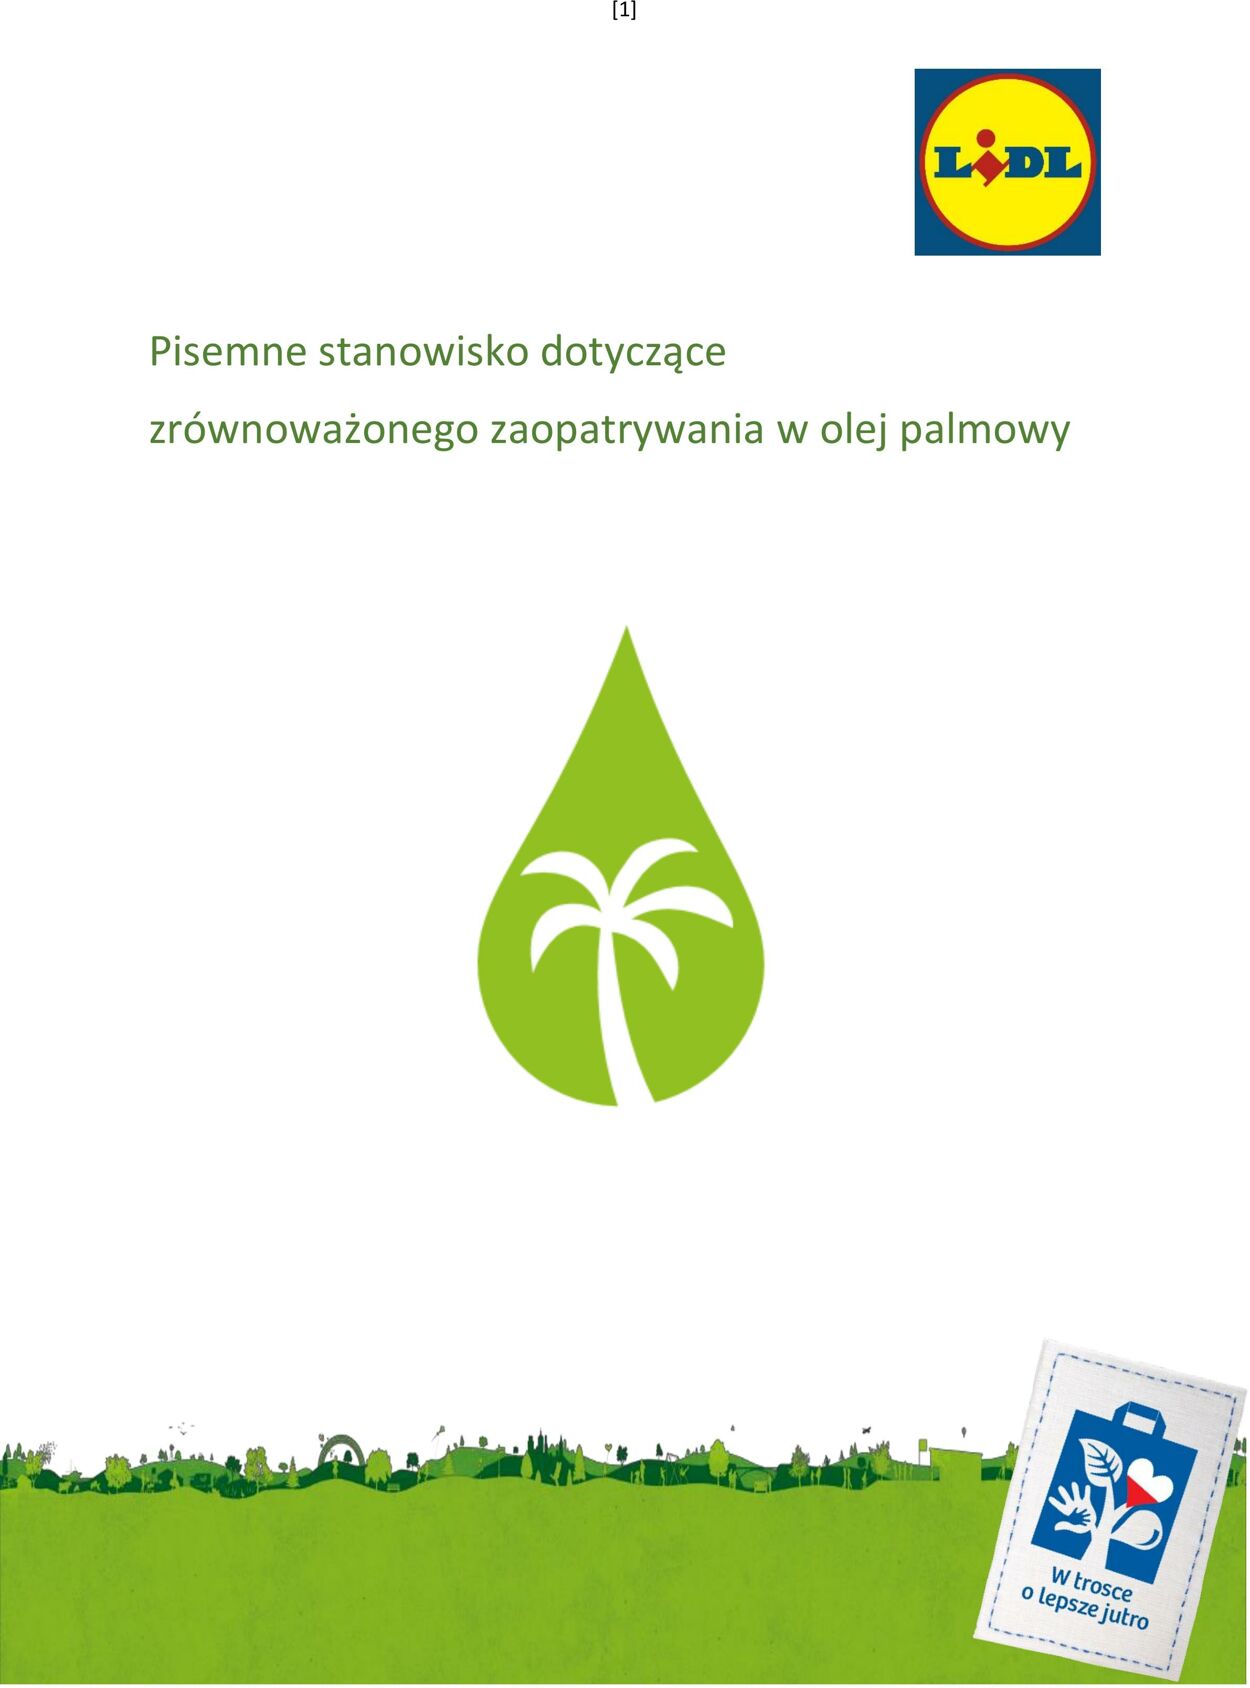 Gazetka Lidl - Stanowisko dotyczące zrównoważonego zaopatrywania w olej palmowy 1 sty, 2019 - 31 gru, 2030